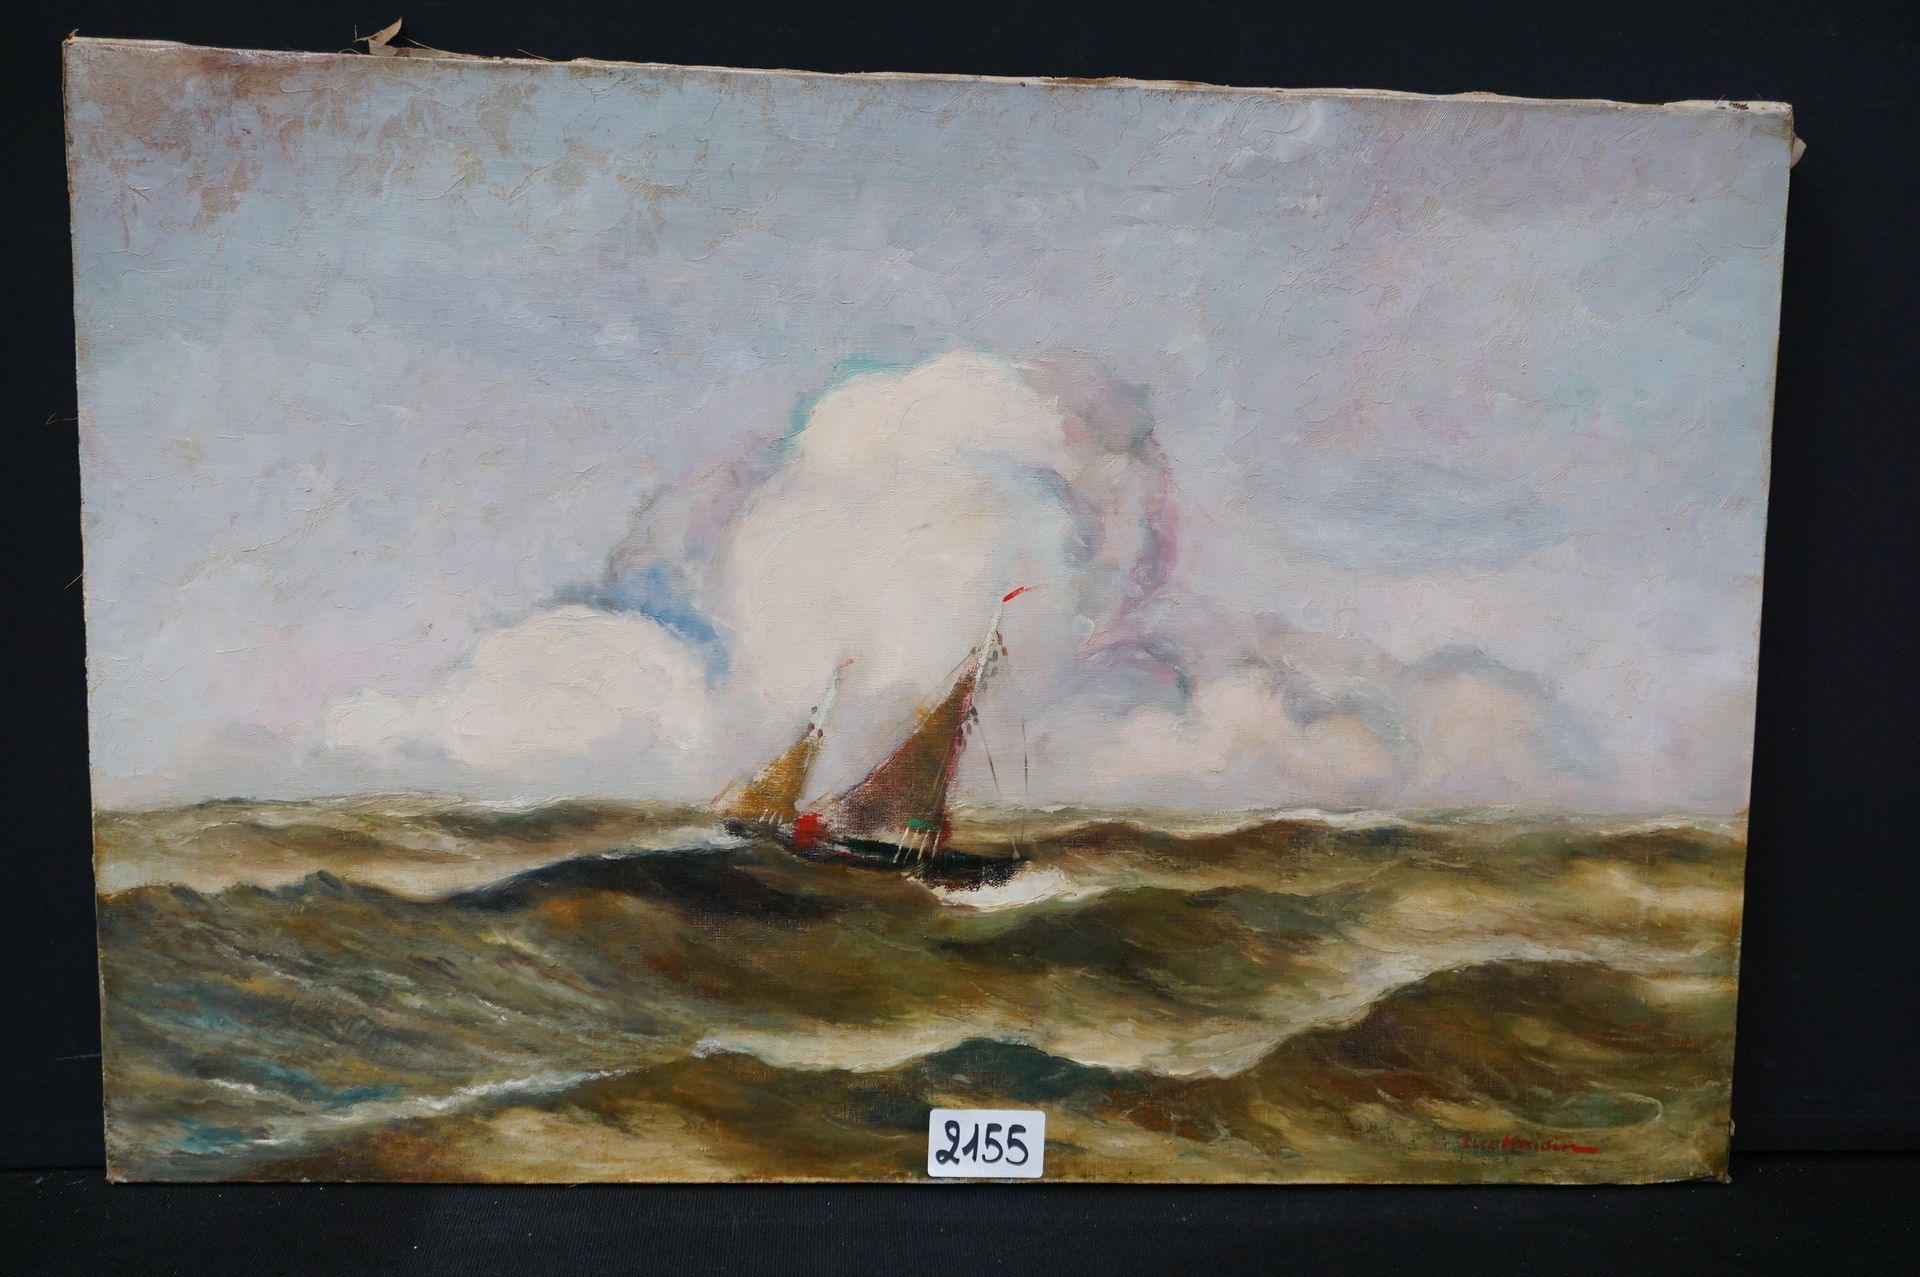 LUC KAISIN (1900 - 1963) "海军与渔船" - 布面油画 - 已签名 - 60 x 90 cm